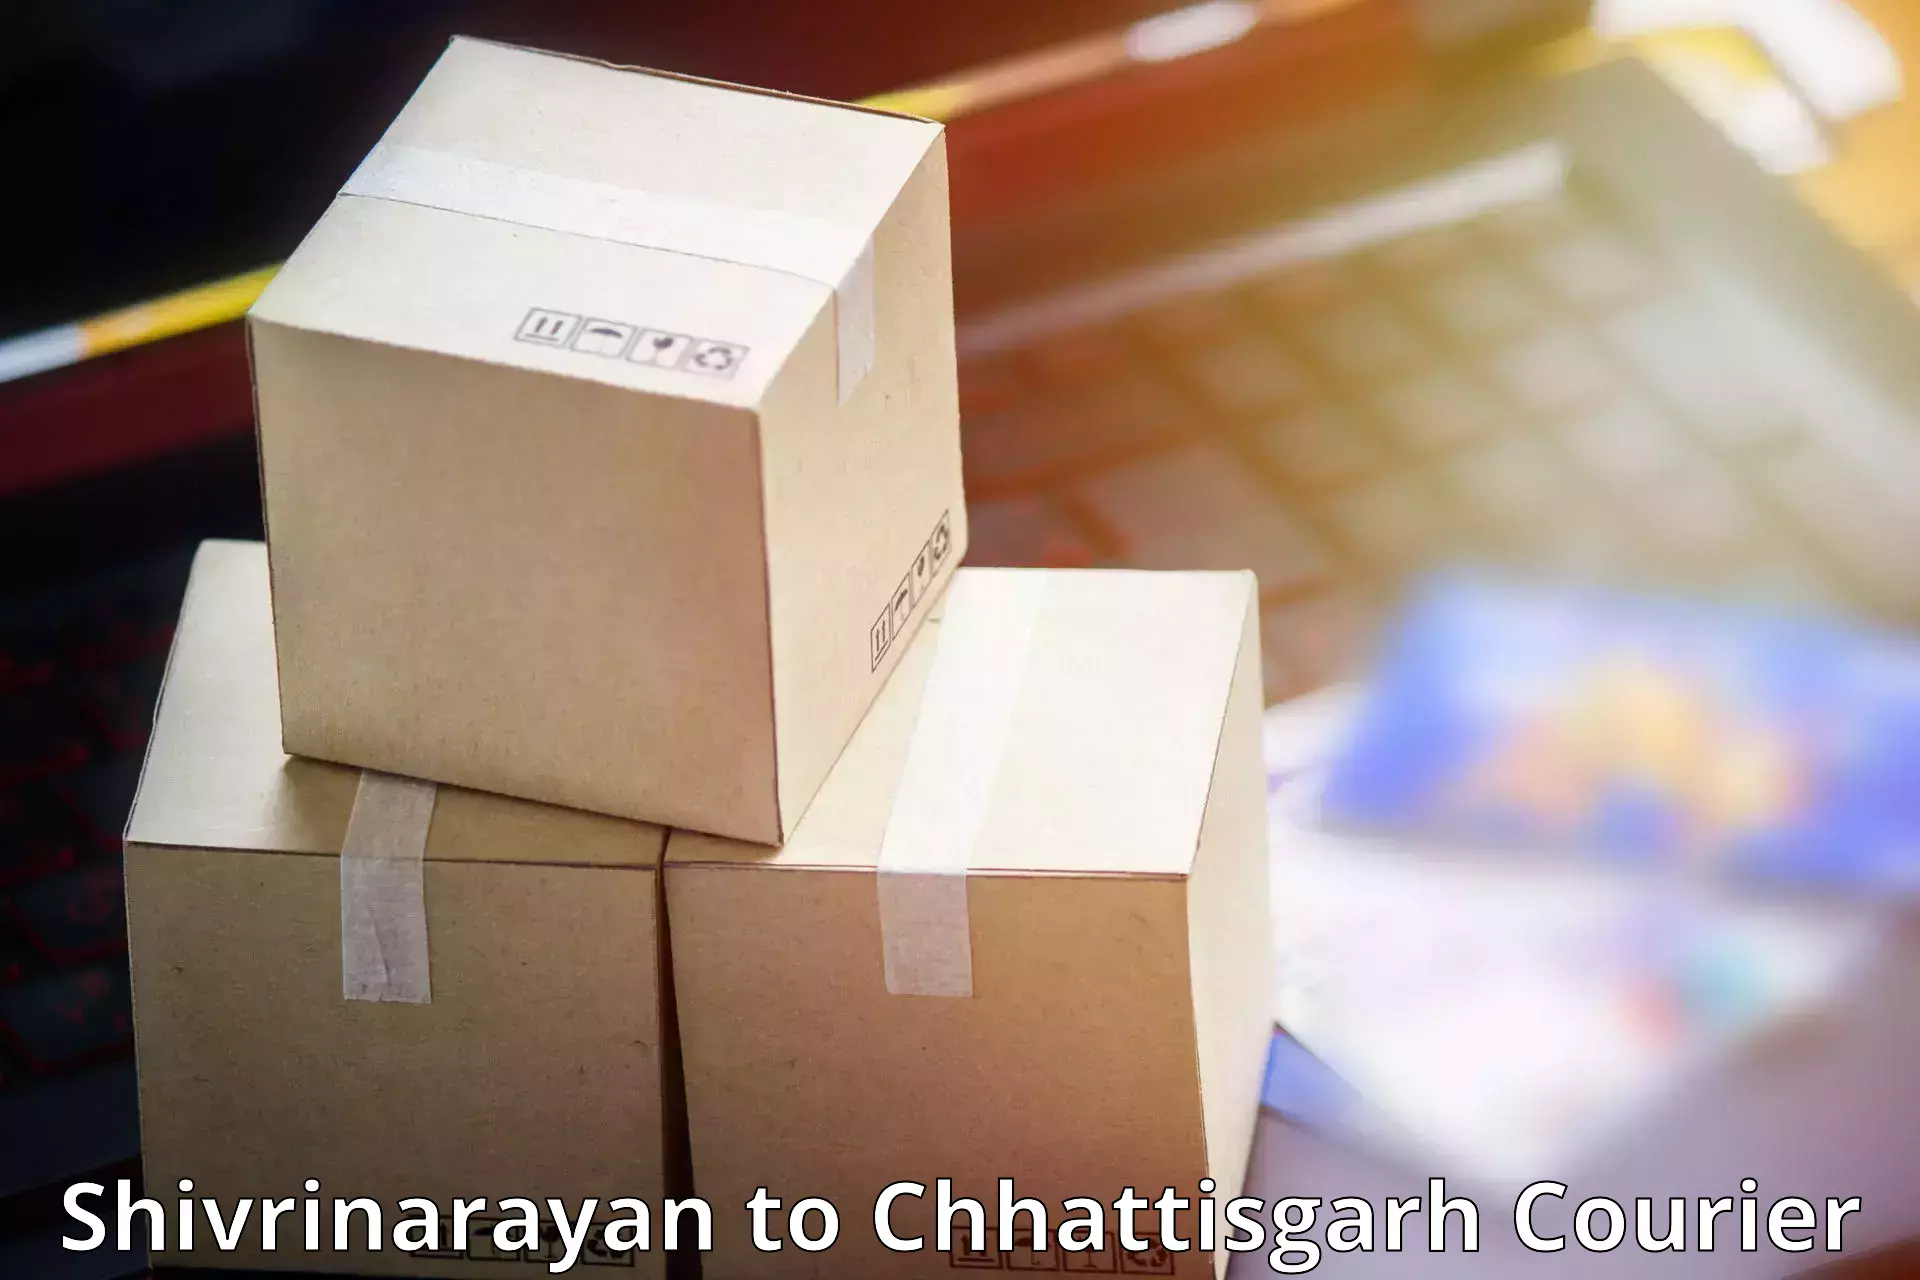 Efficient parcel service Shivrinarayan to Bhilai